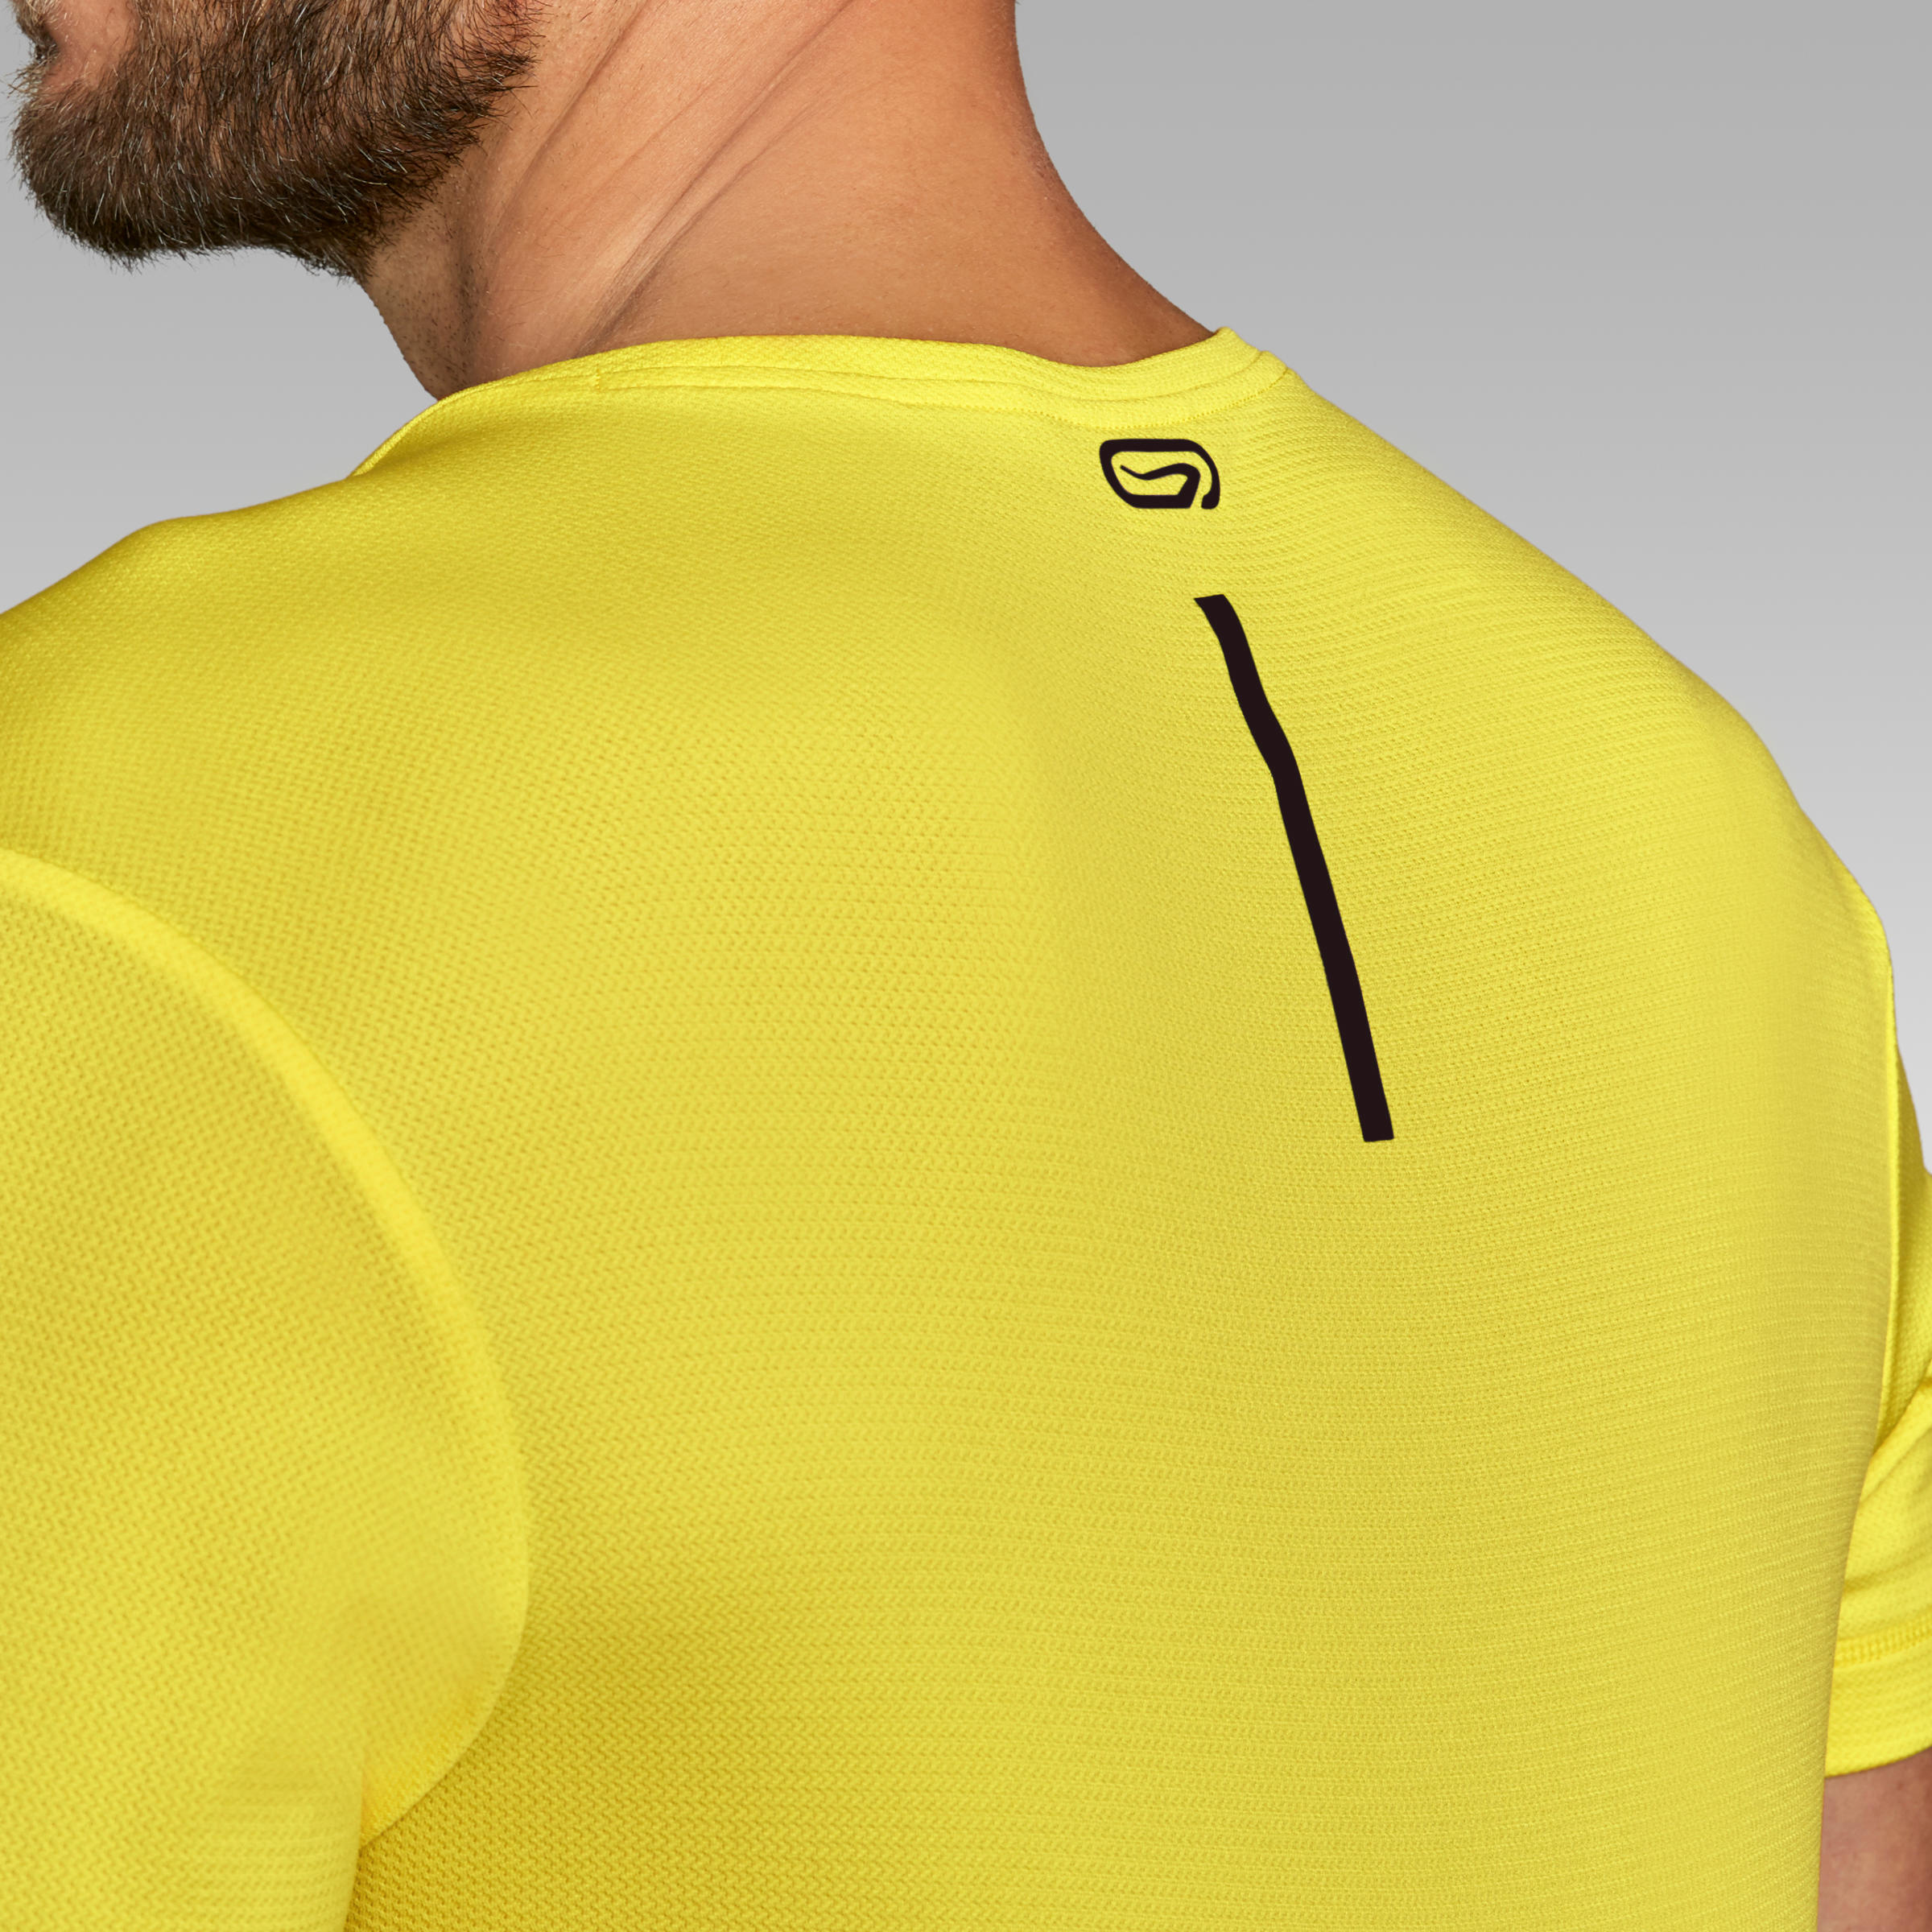 Dry Men's Breathable Running T-Shirt - Lemon Yellow 6/7